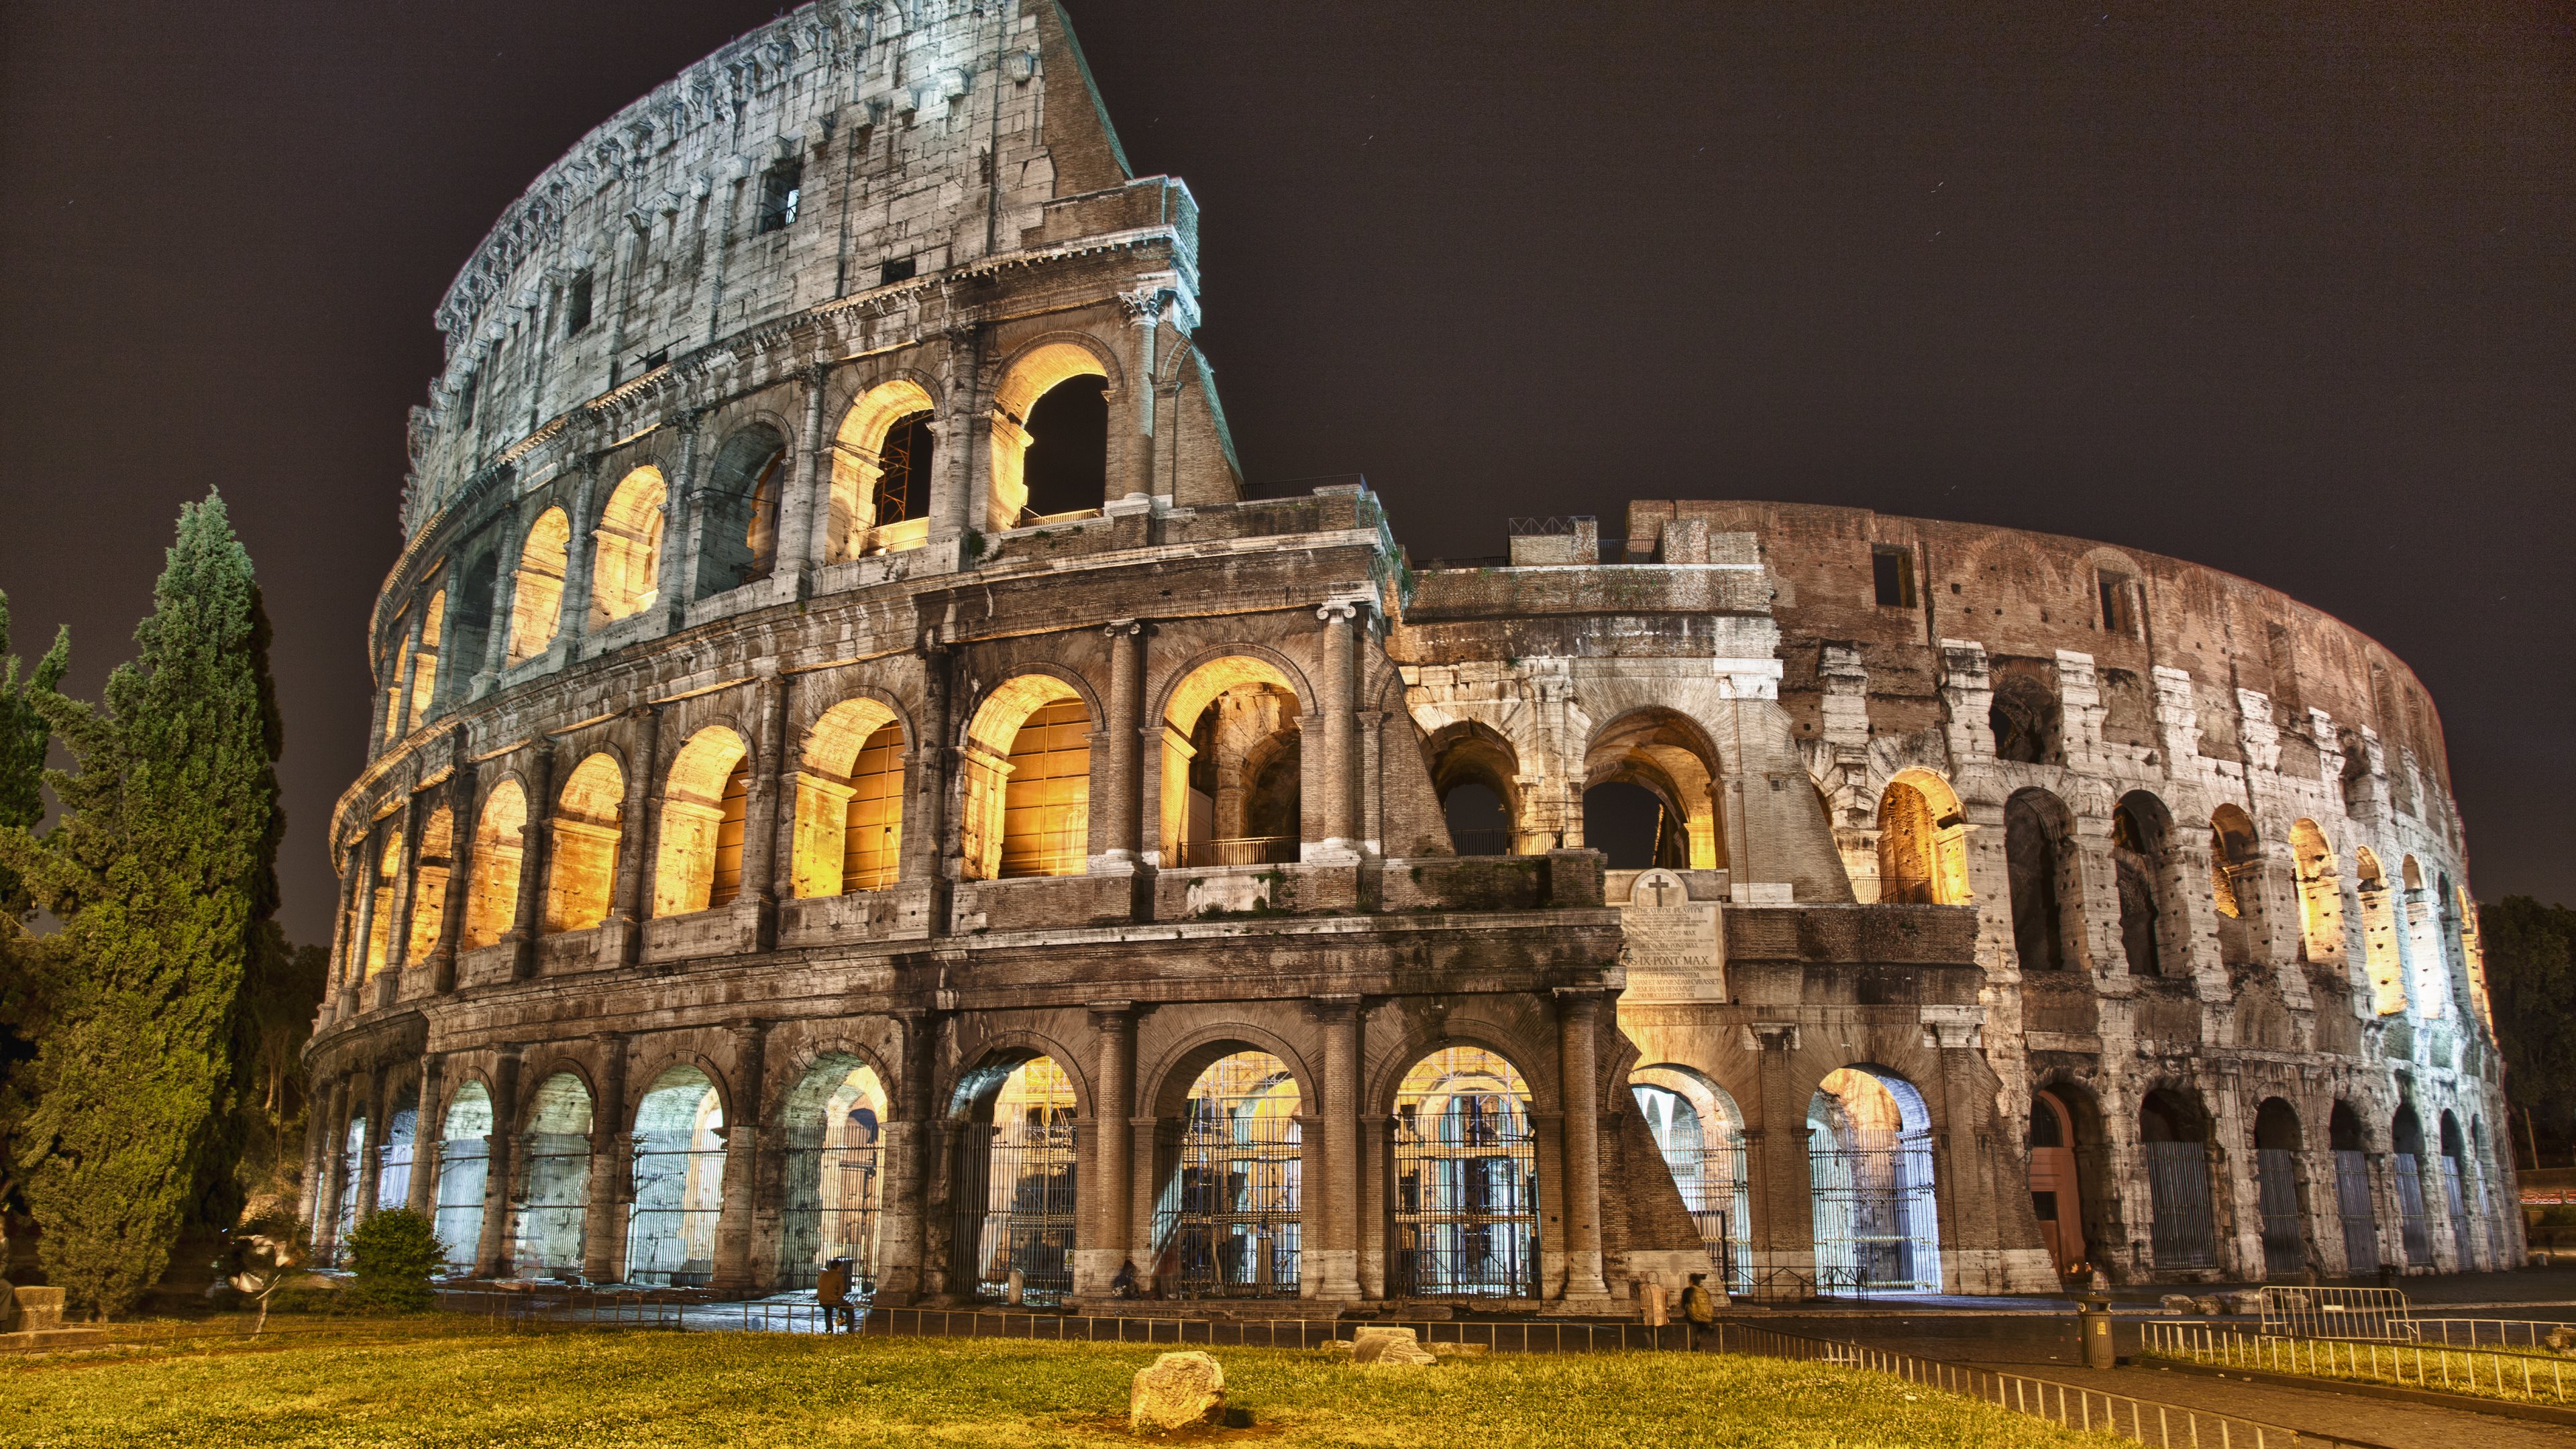 Man Made Colosseum 4k Ultra HD Wallpaper